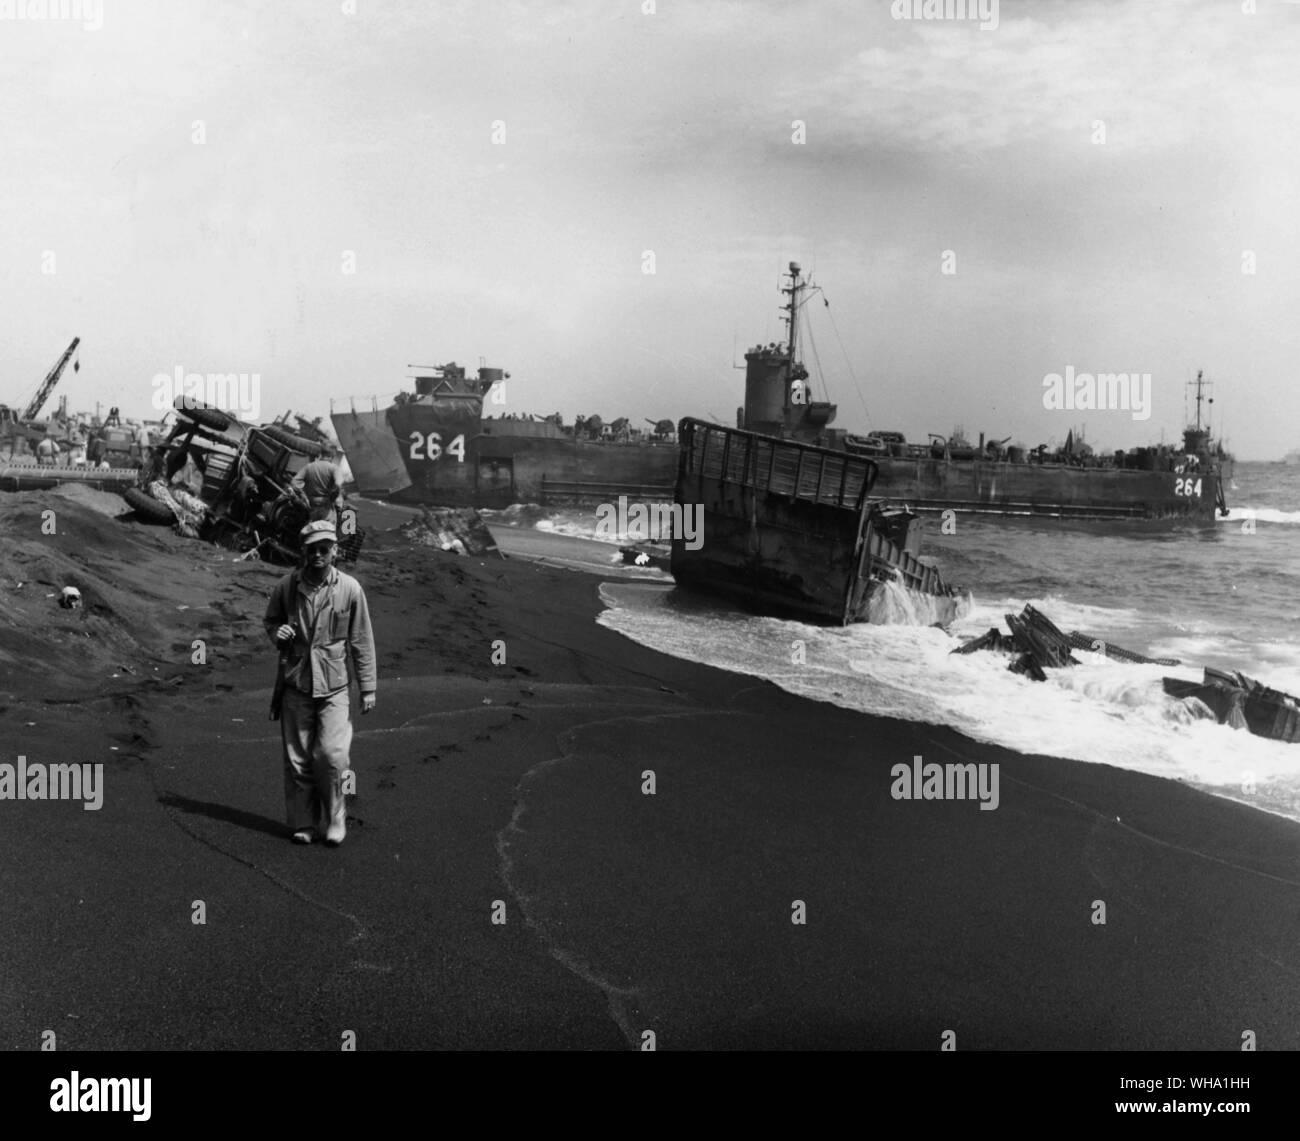 WW2 : îles Volcano. Le landing ship tank (LST) 264 le long de la plage pendant les opérations de débarquement à Red Beach, Iwo Jima. Mars 1945. Banque D'Images